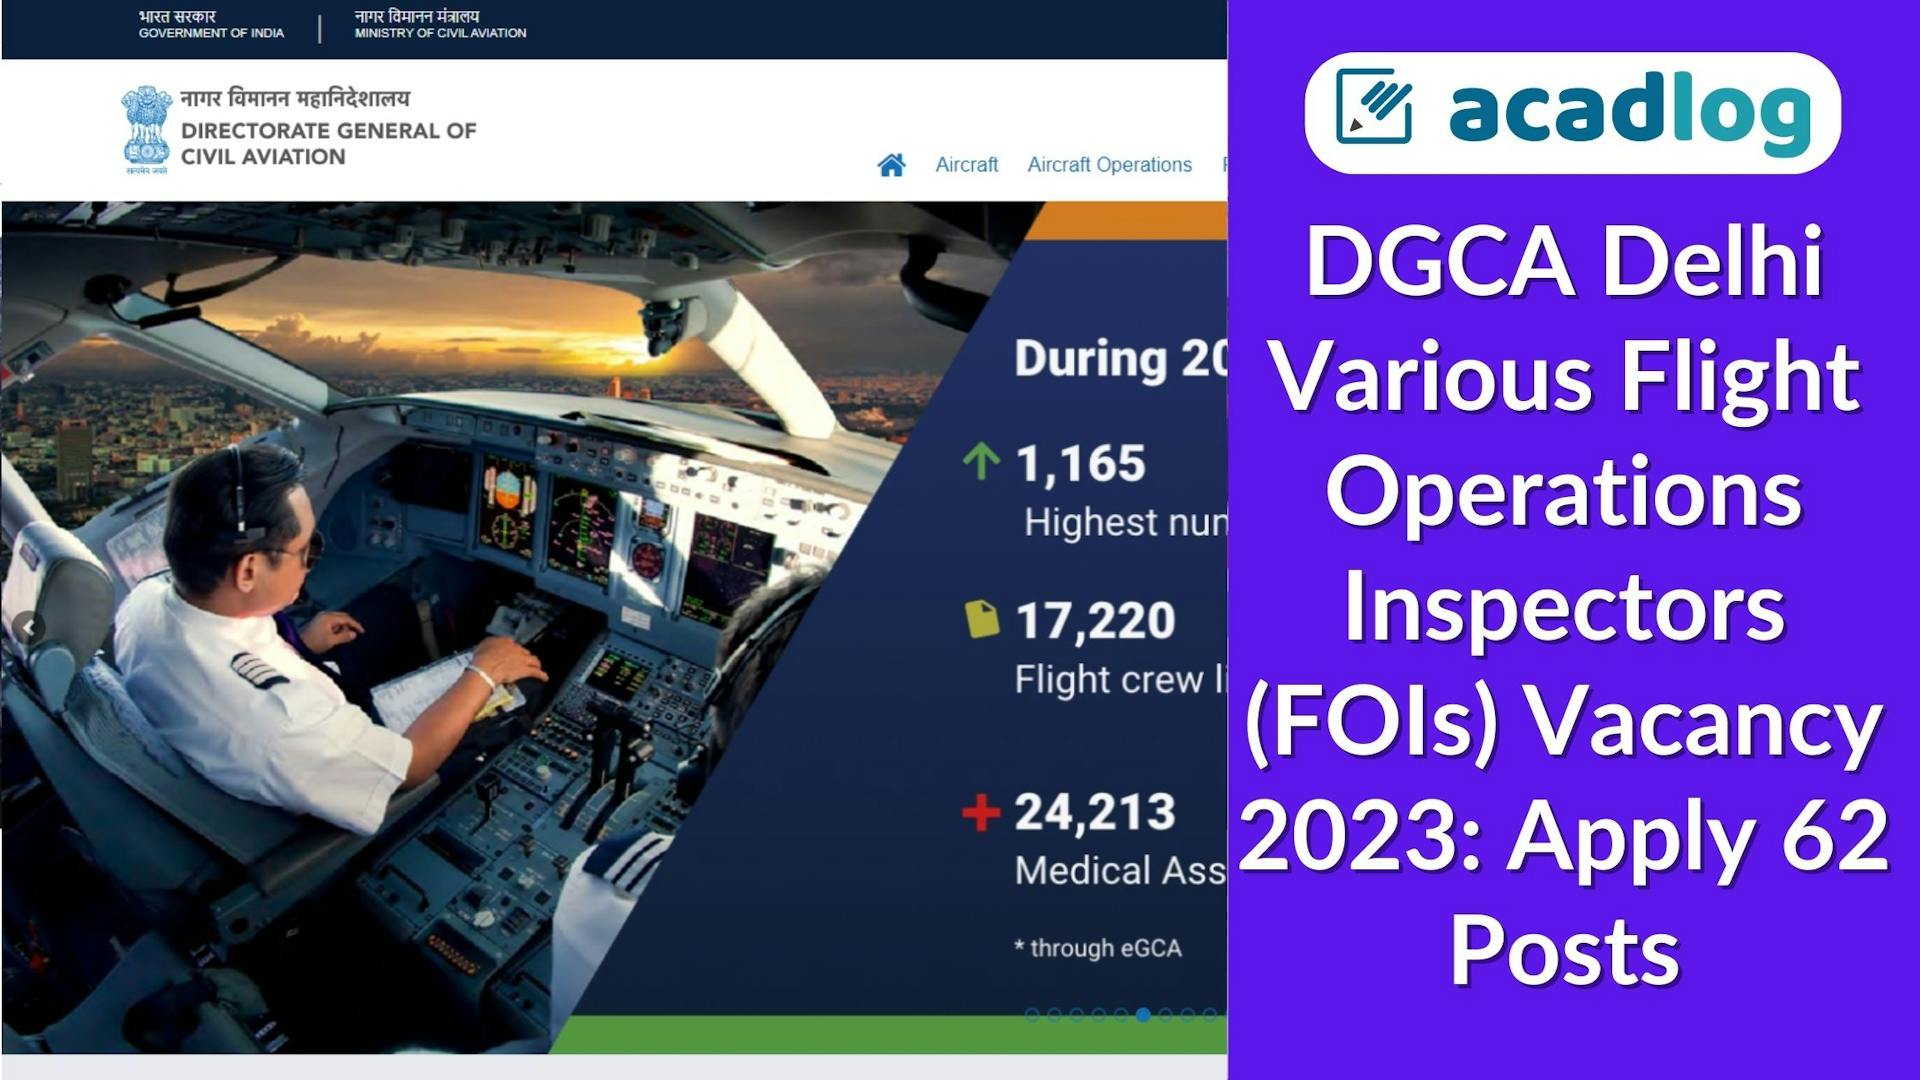 DGCA Delhi Various Flight Operations Inspectors (FOIs) Vacancy 2023: Apply 62 Posts